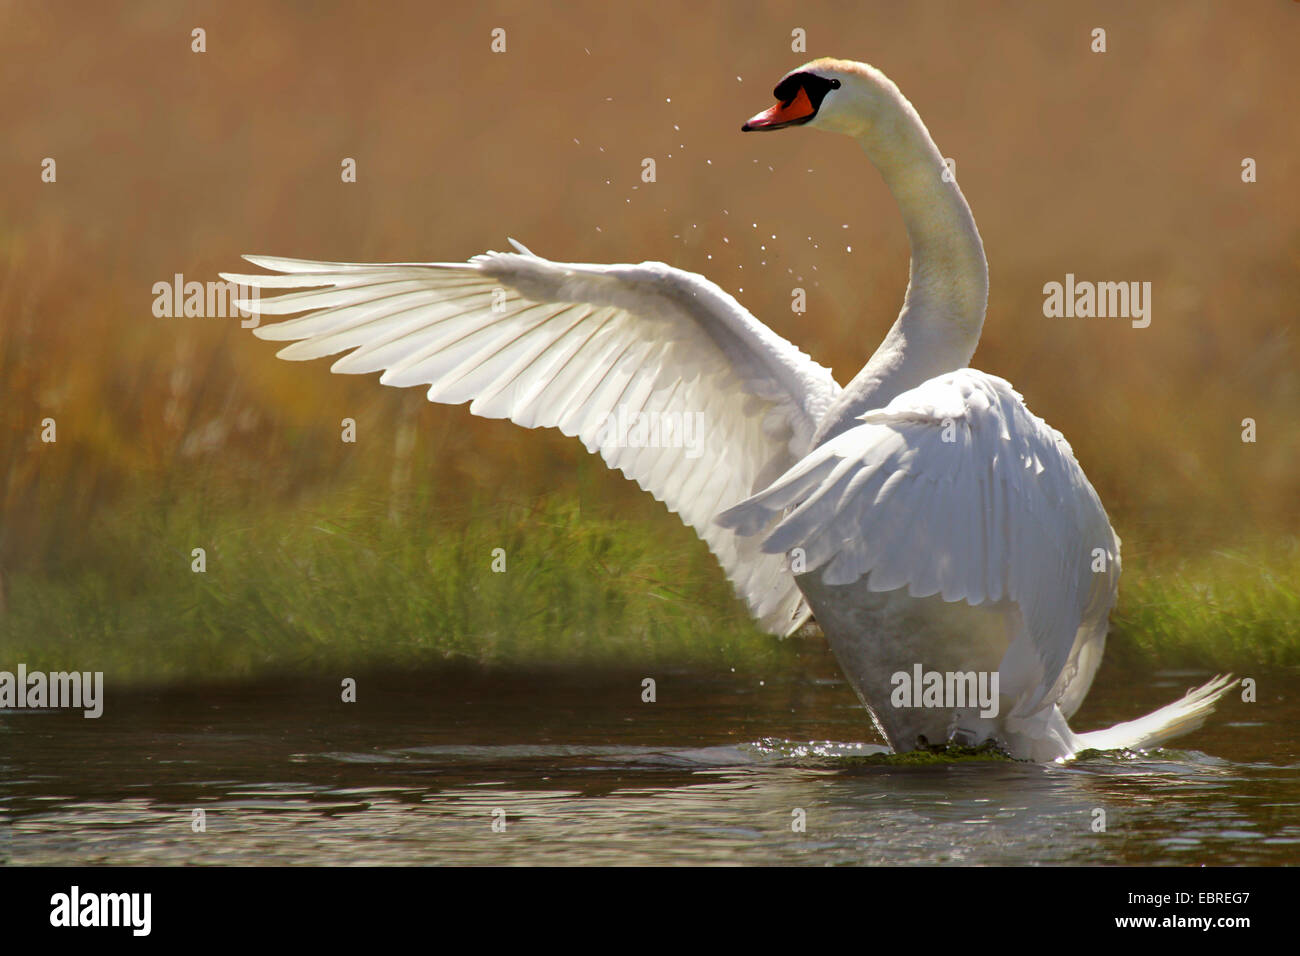 Batiendo las alas fotografías e imágenes de alta resolución - Alamy